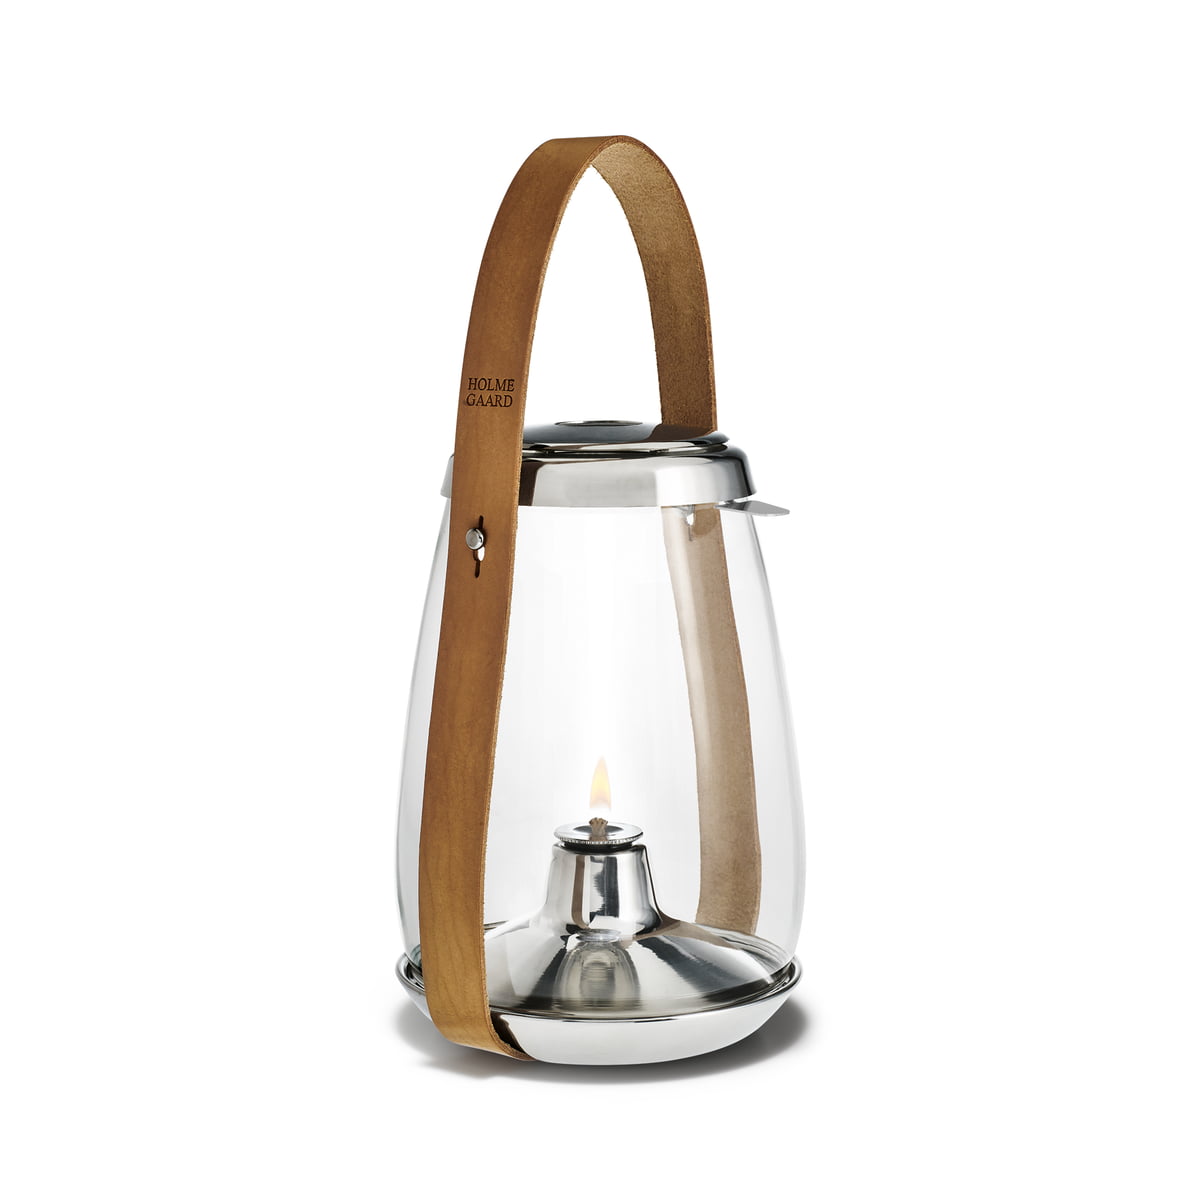 Udøve sport Vellykket Continental Design with Light oil lantern by Holmegaard